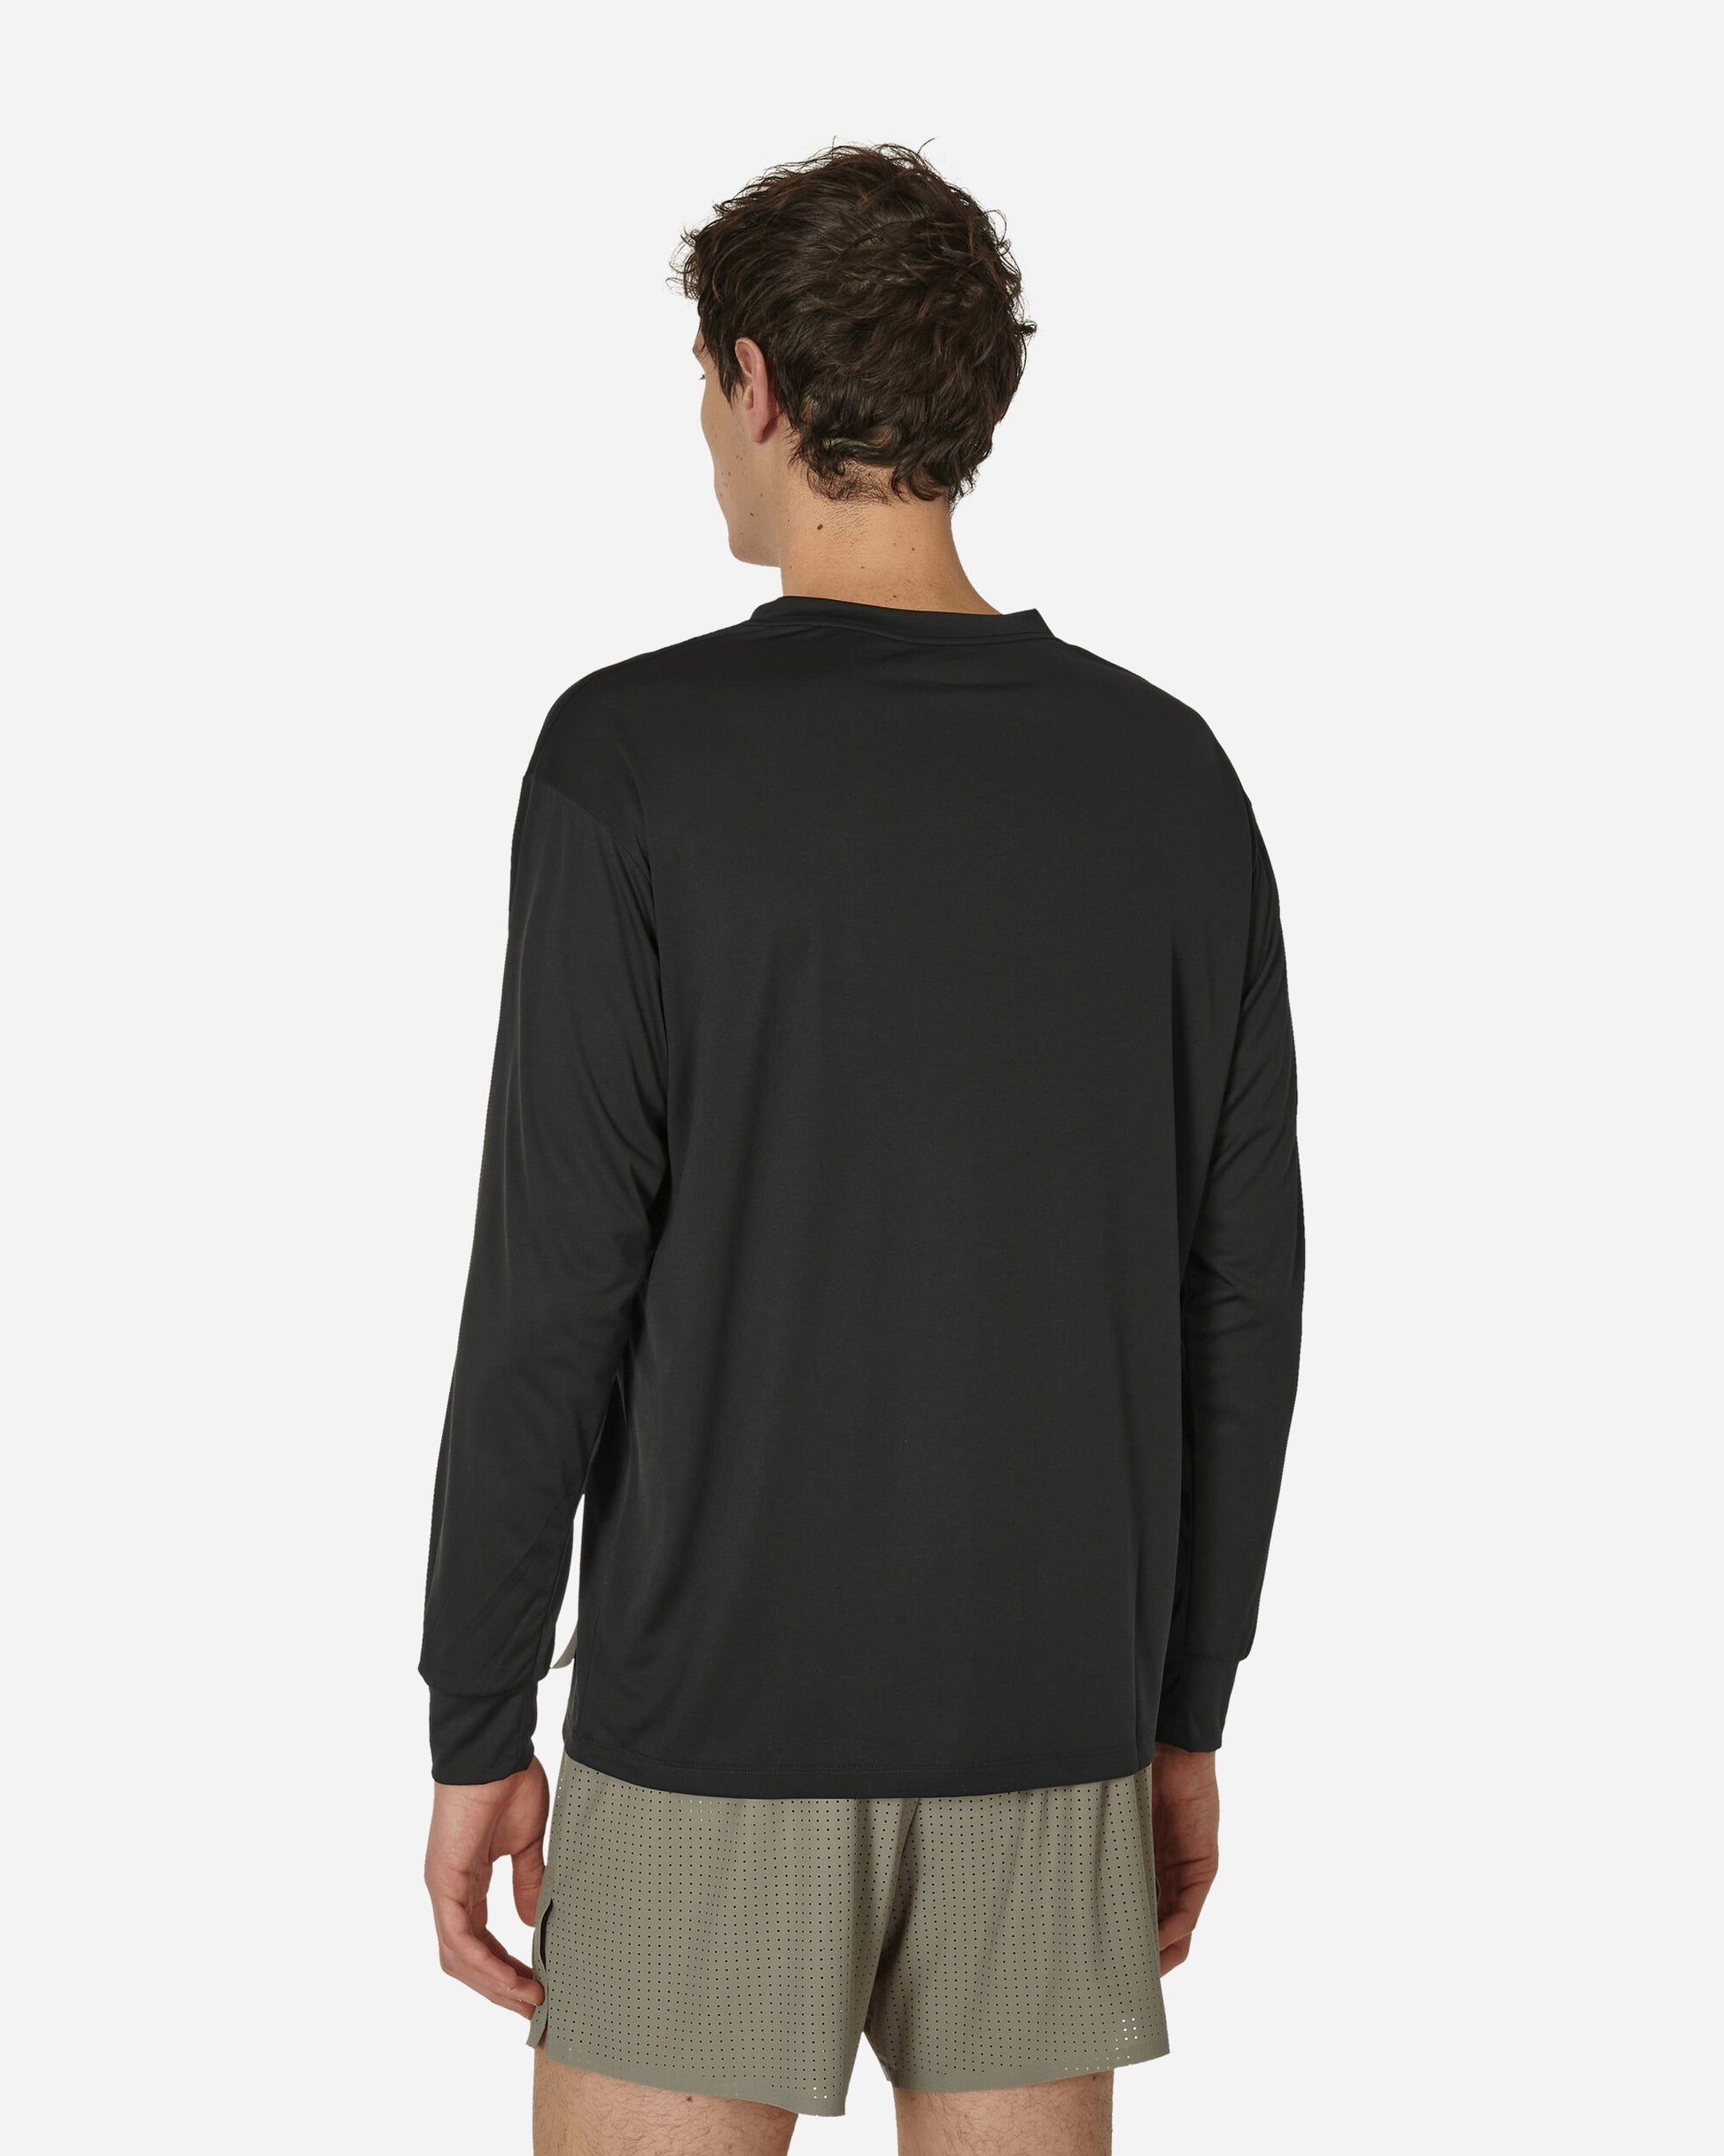 Satisfy Auralite Long Tee Black T-Shirts Longsleeve 5087 BK-OV